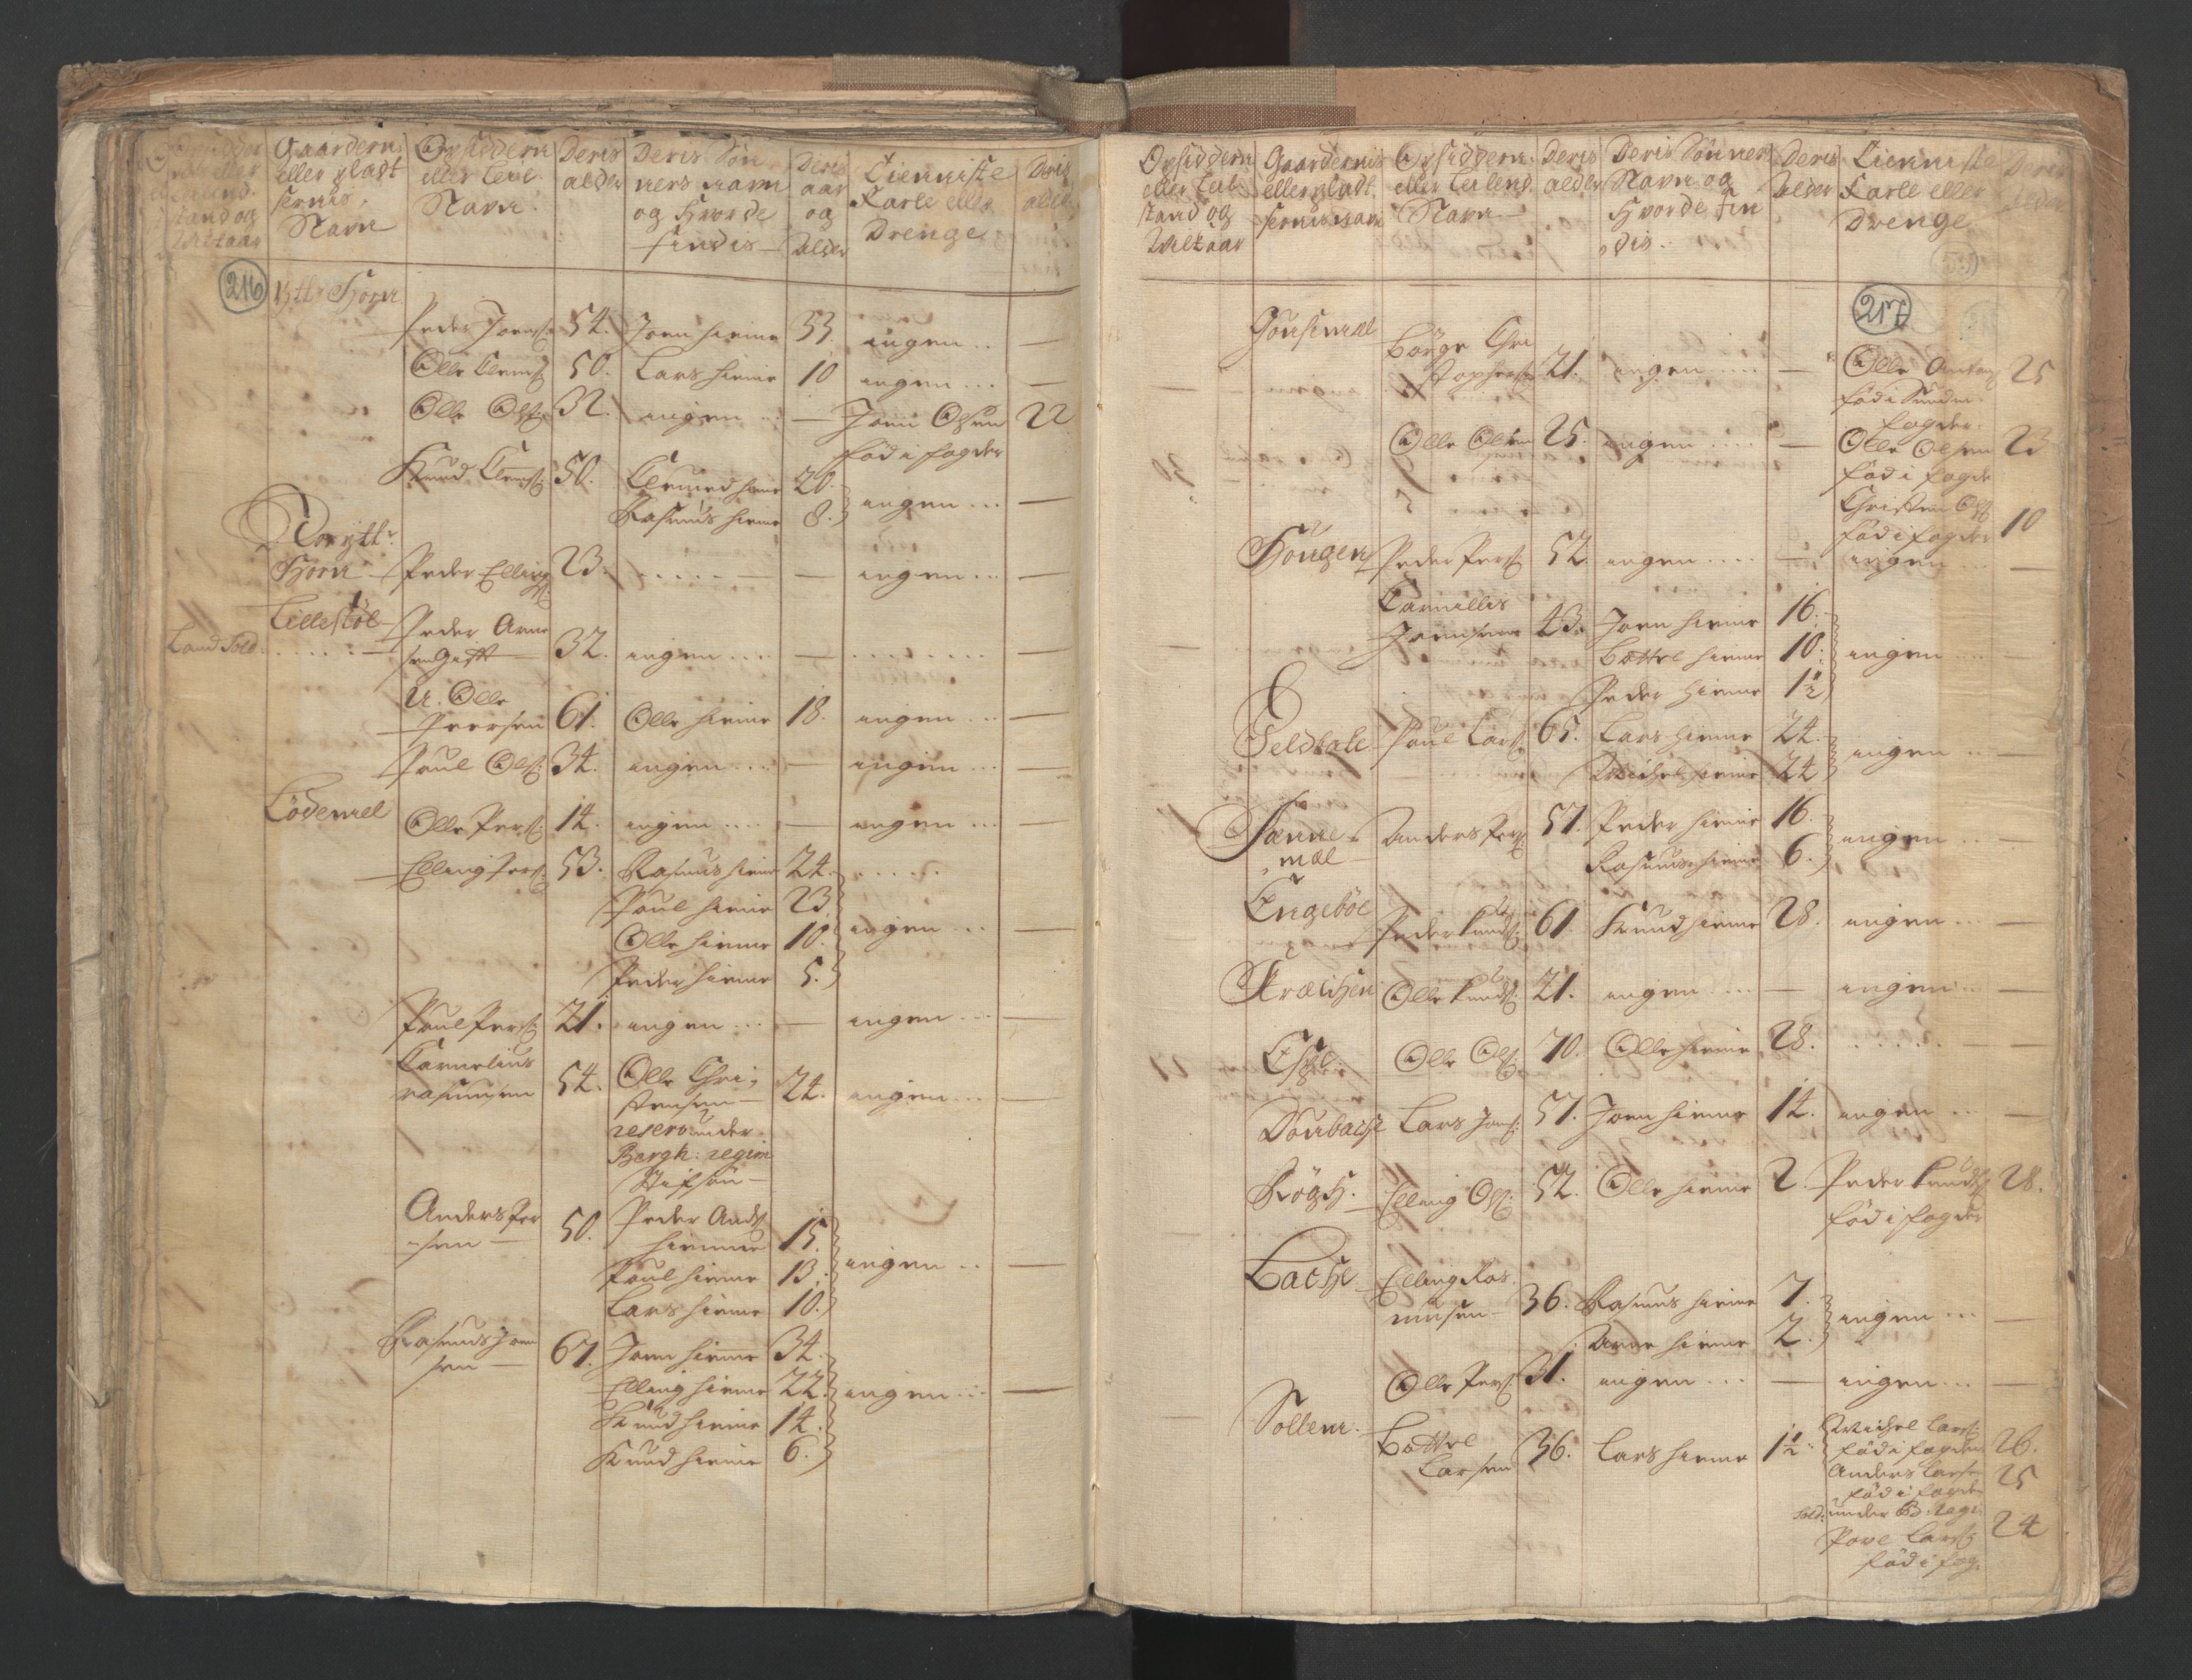 RA, Manntallet 1701, nr. 9: Sunnfjord fogderi, Nordfjord fogderi og Svanø birk, 1701, s. 216-217